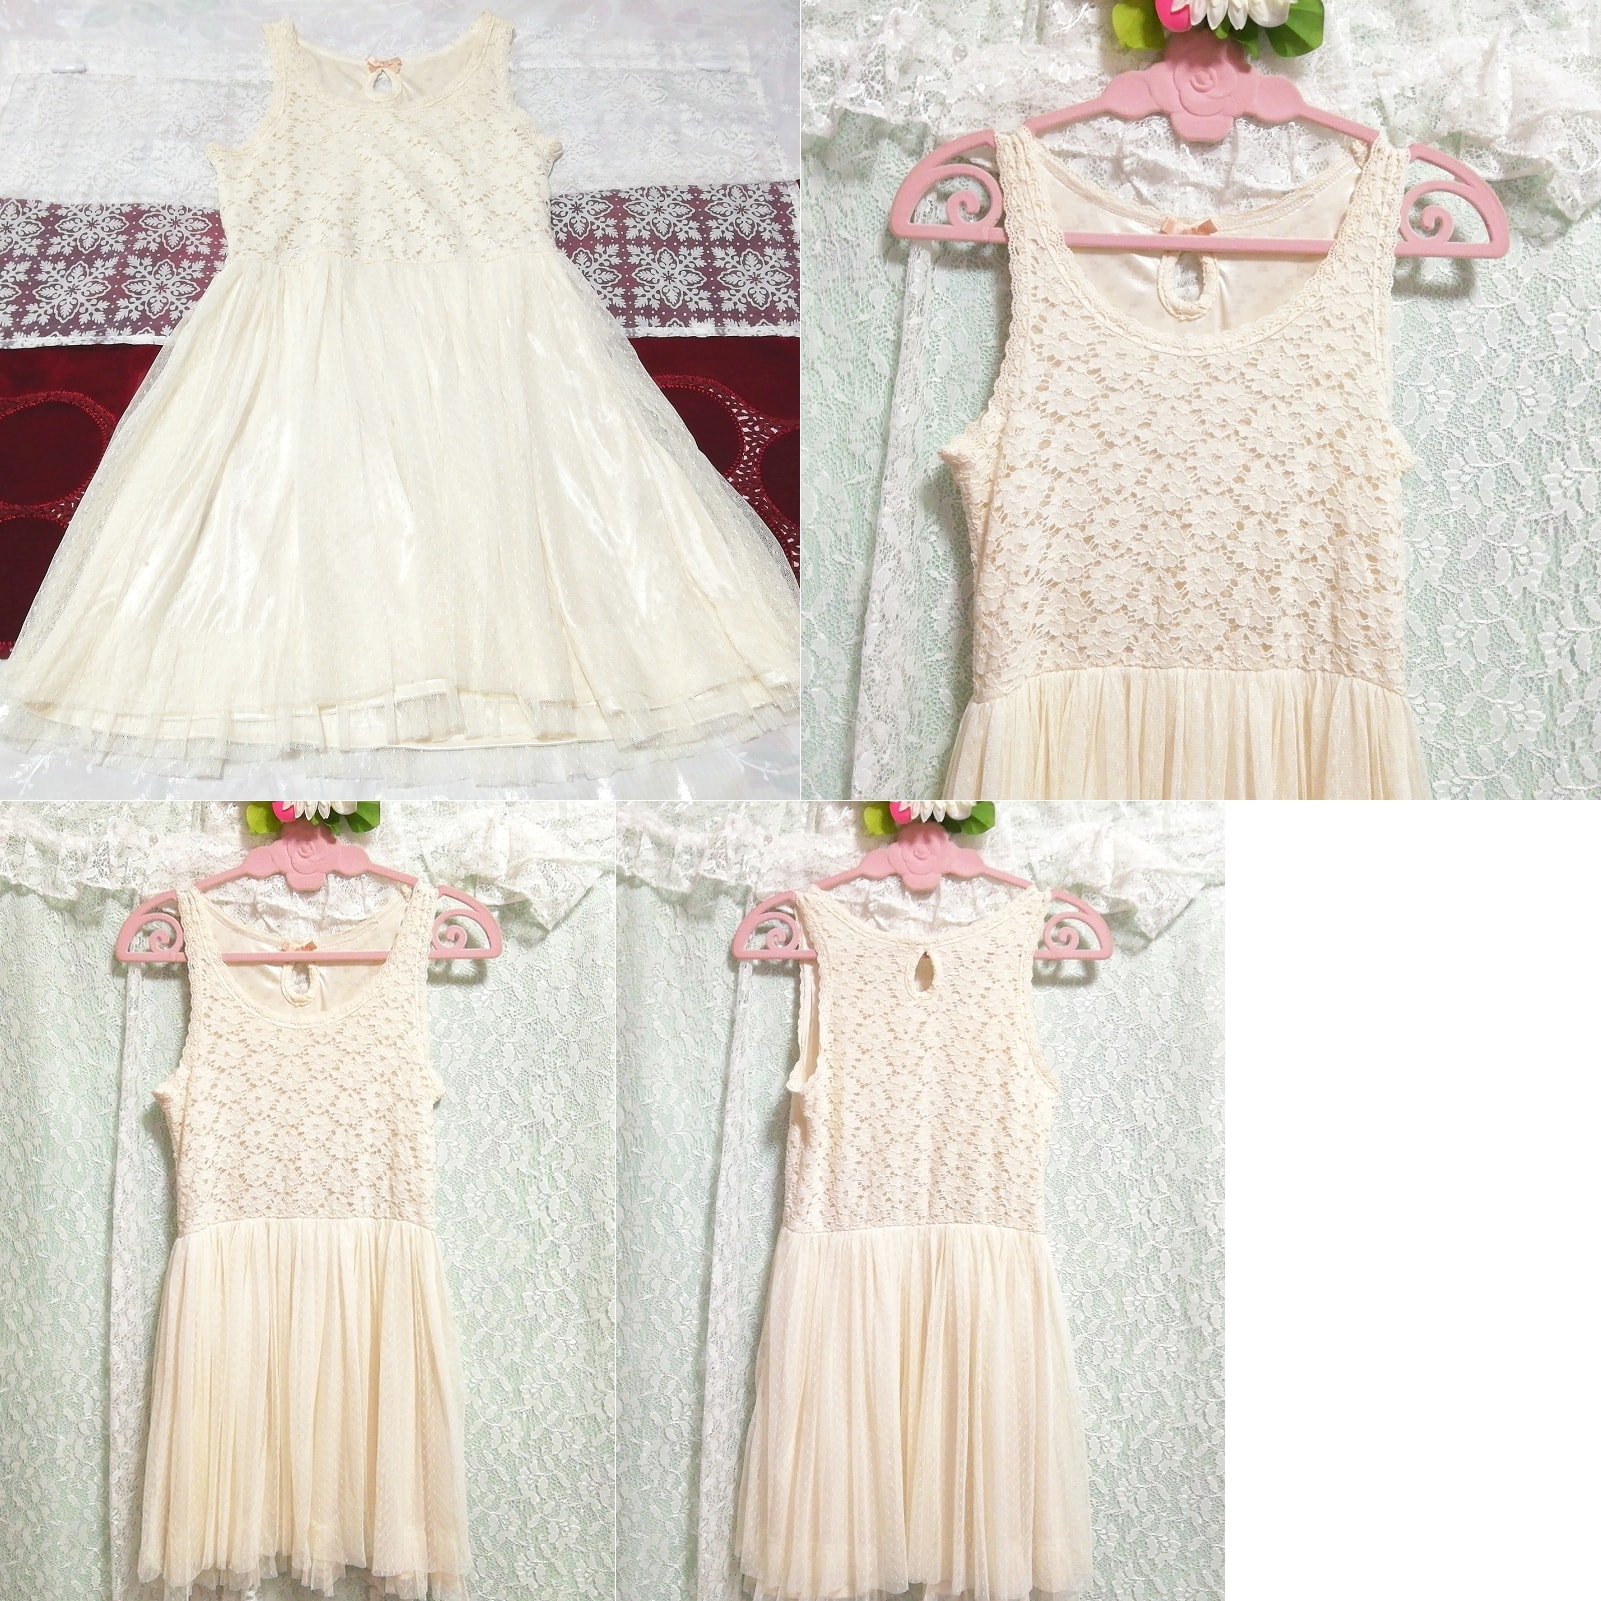 White lace sleeveless negligee nightgown nightwear mini dress, mini skirt, m size